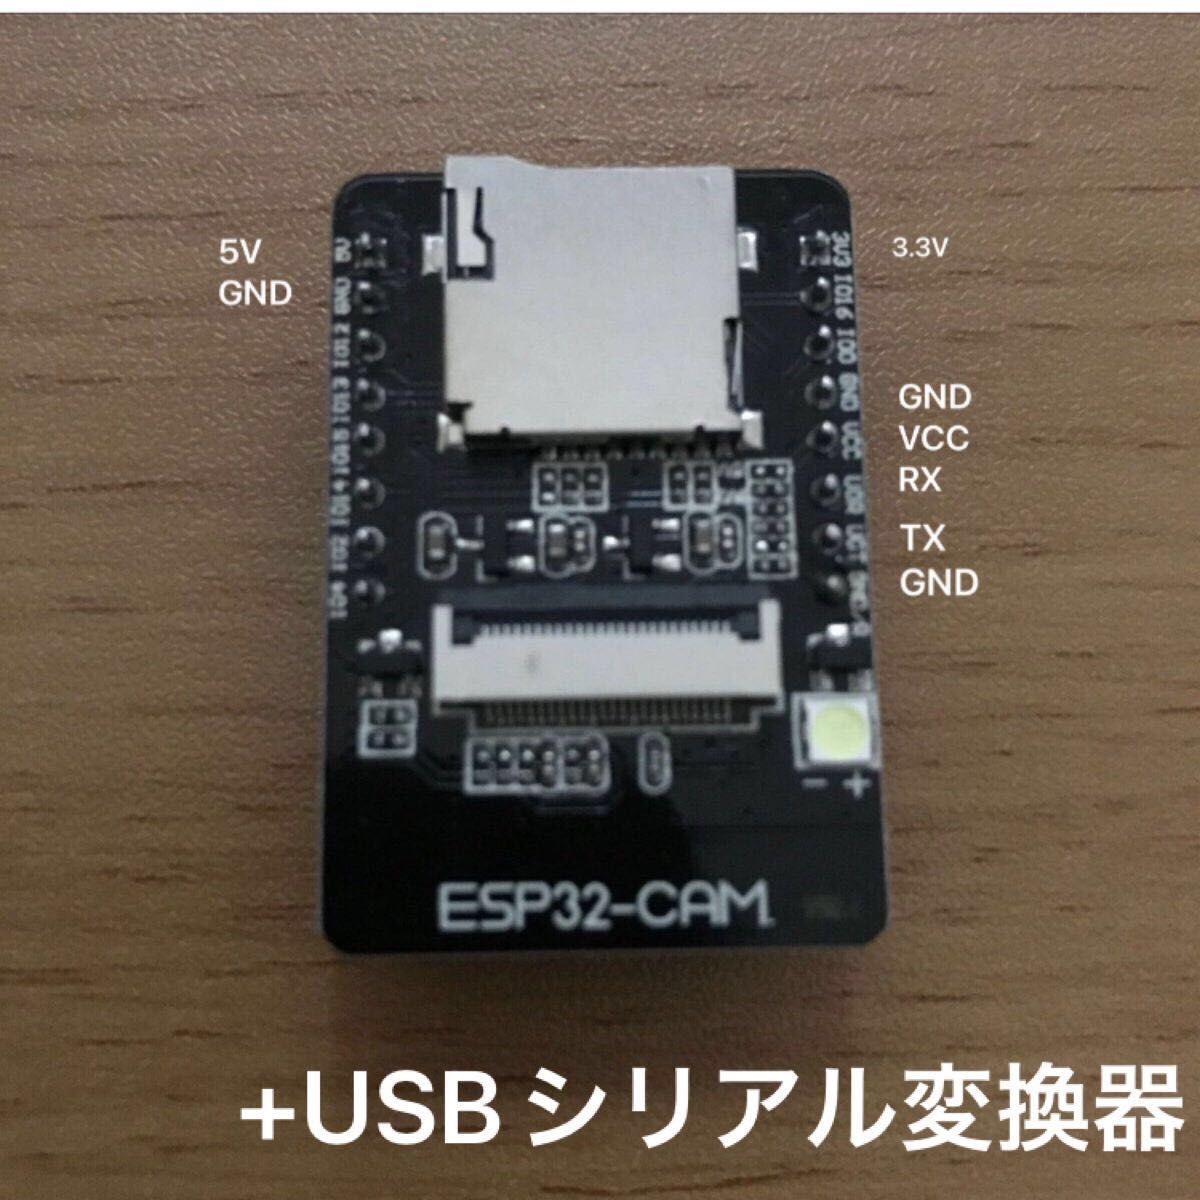 Bluetoothモジュール(ESP32 CAMベース)+USBシリアル変換器